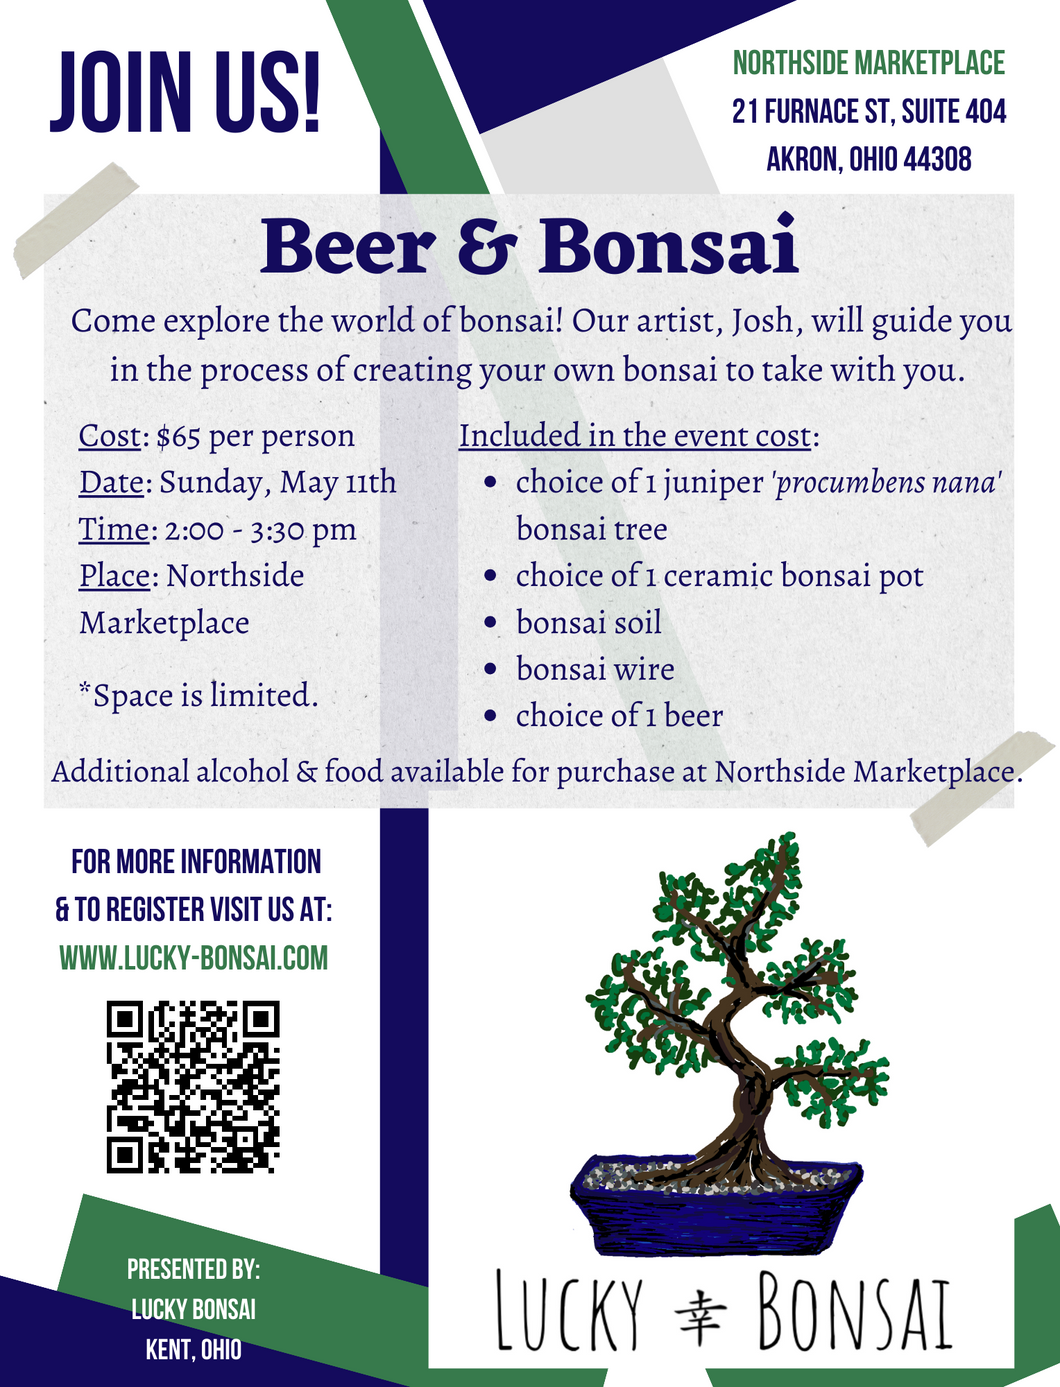 Beer & Bonsai-Sat May 11th (not Sunday)